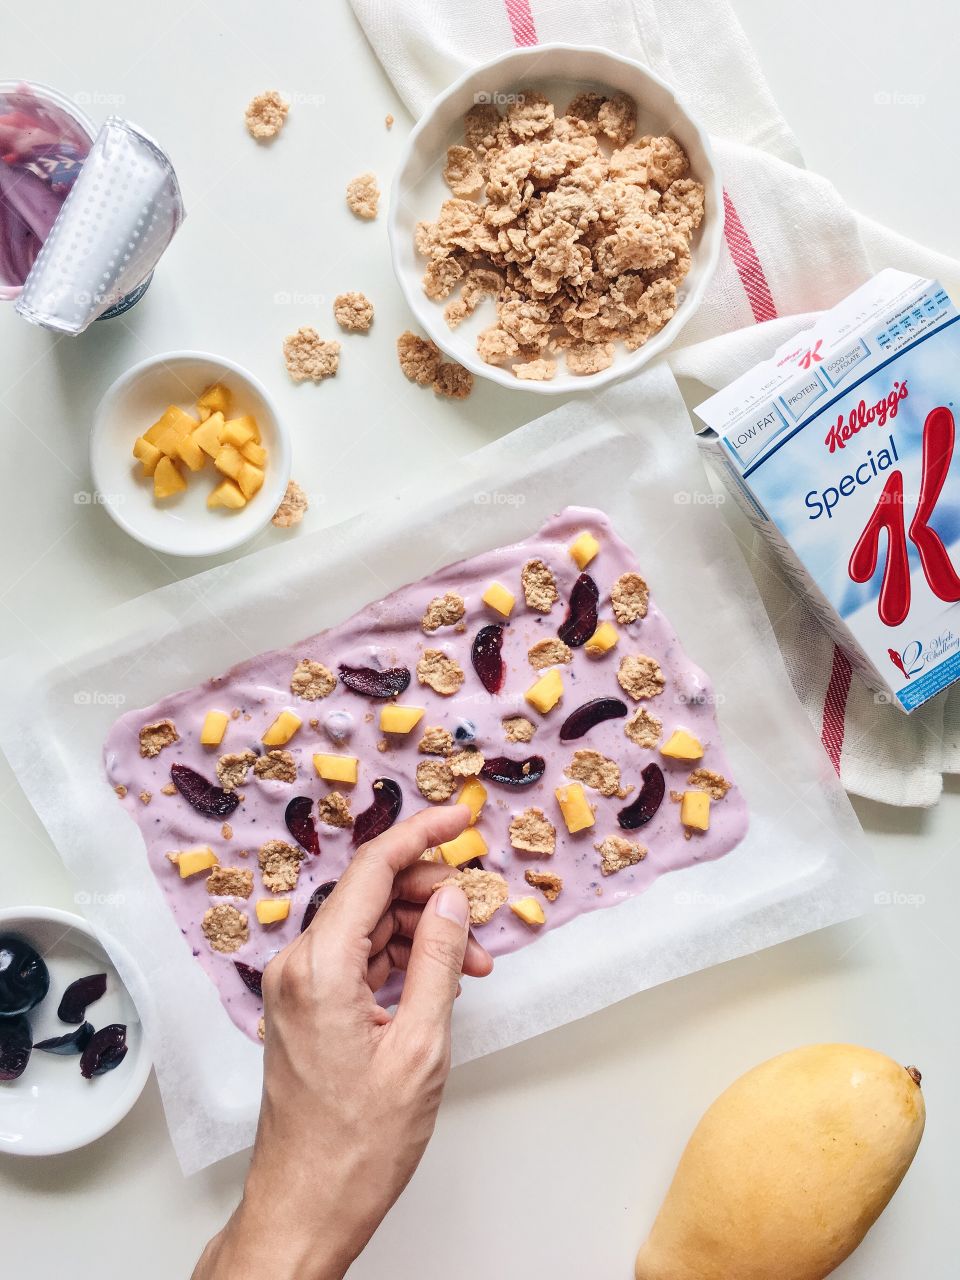 Reimagining cereal : Healthy frozen cereal yogurt bark with Kellogg's Special K.
(Ingredients : Kellogg's Special K, greek yogurt , mango and cherry)
